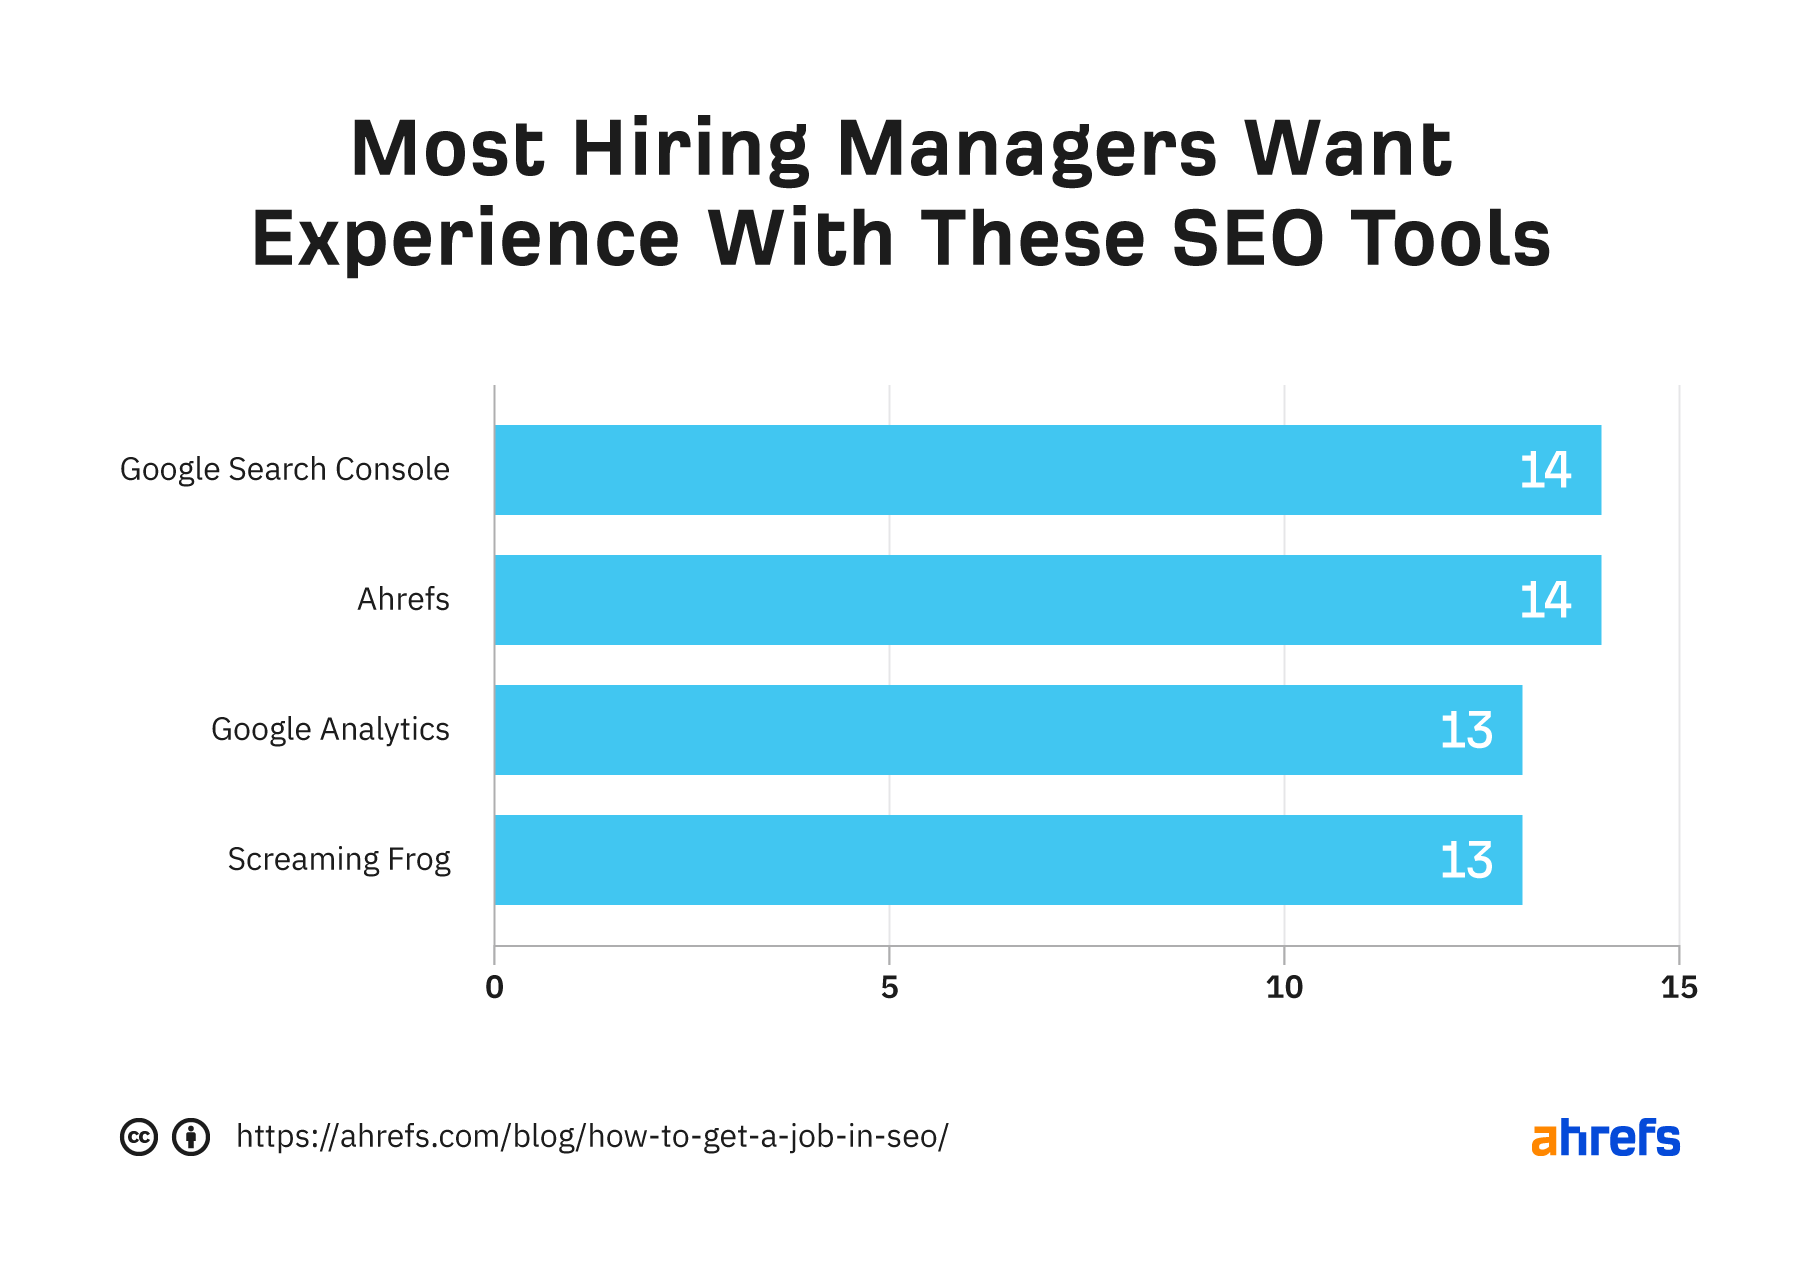 La mayoría de los gerentes de contratación quieren experiencia con estas herramientas de SEO